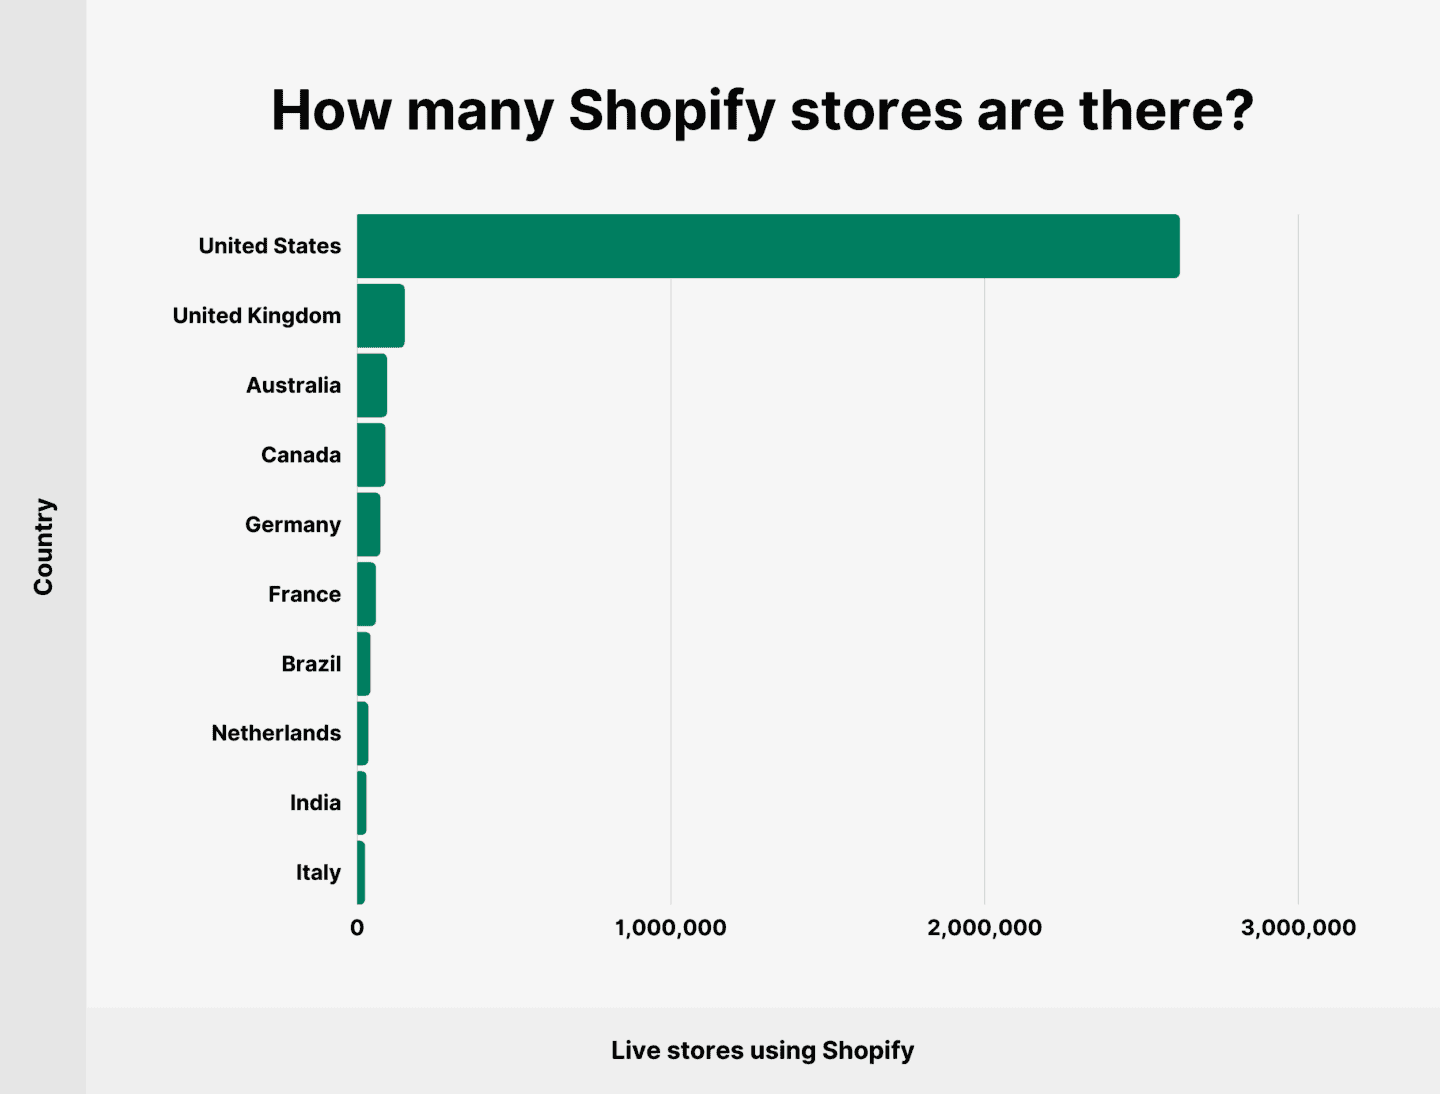 Większość sklepów Shopify znajduje się obecnie w Stanach Zjednoczonych